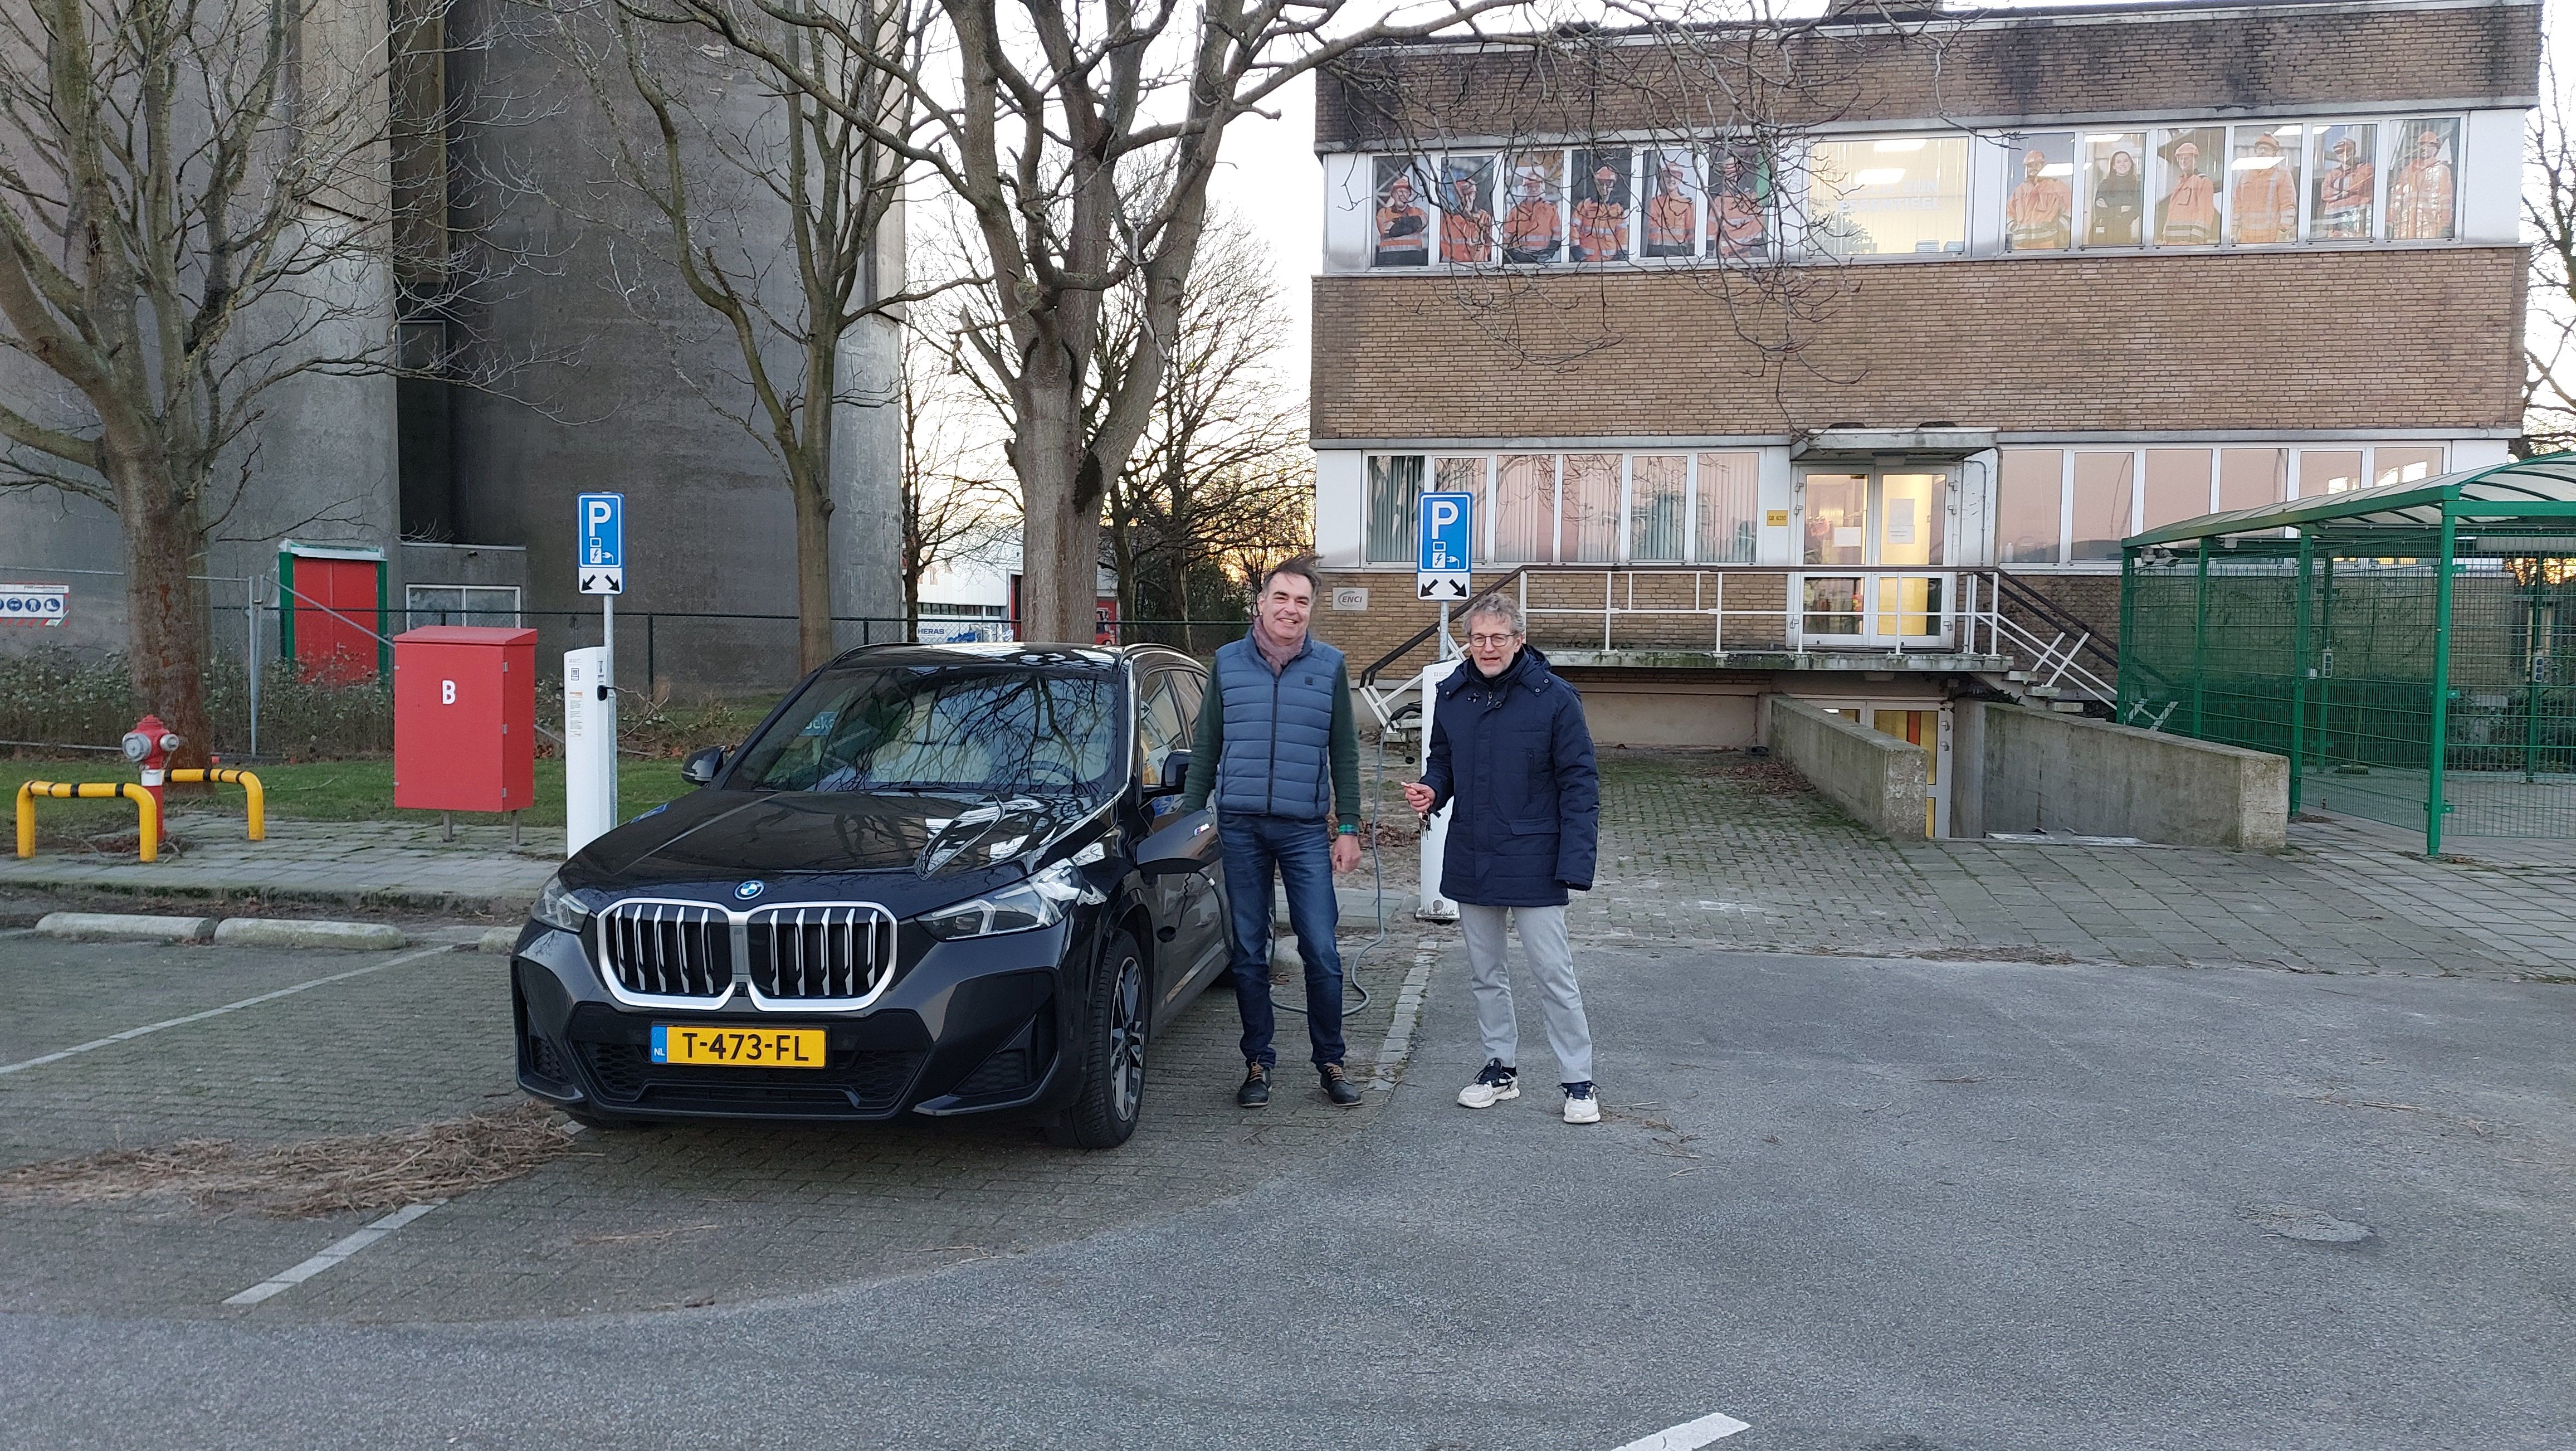 Des bornes de recharge pour véhicules électriques : une première pour les sites cimentiers de Rotterdam et IJmuiden aux Pays-Bas